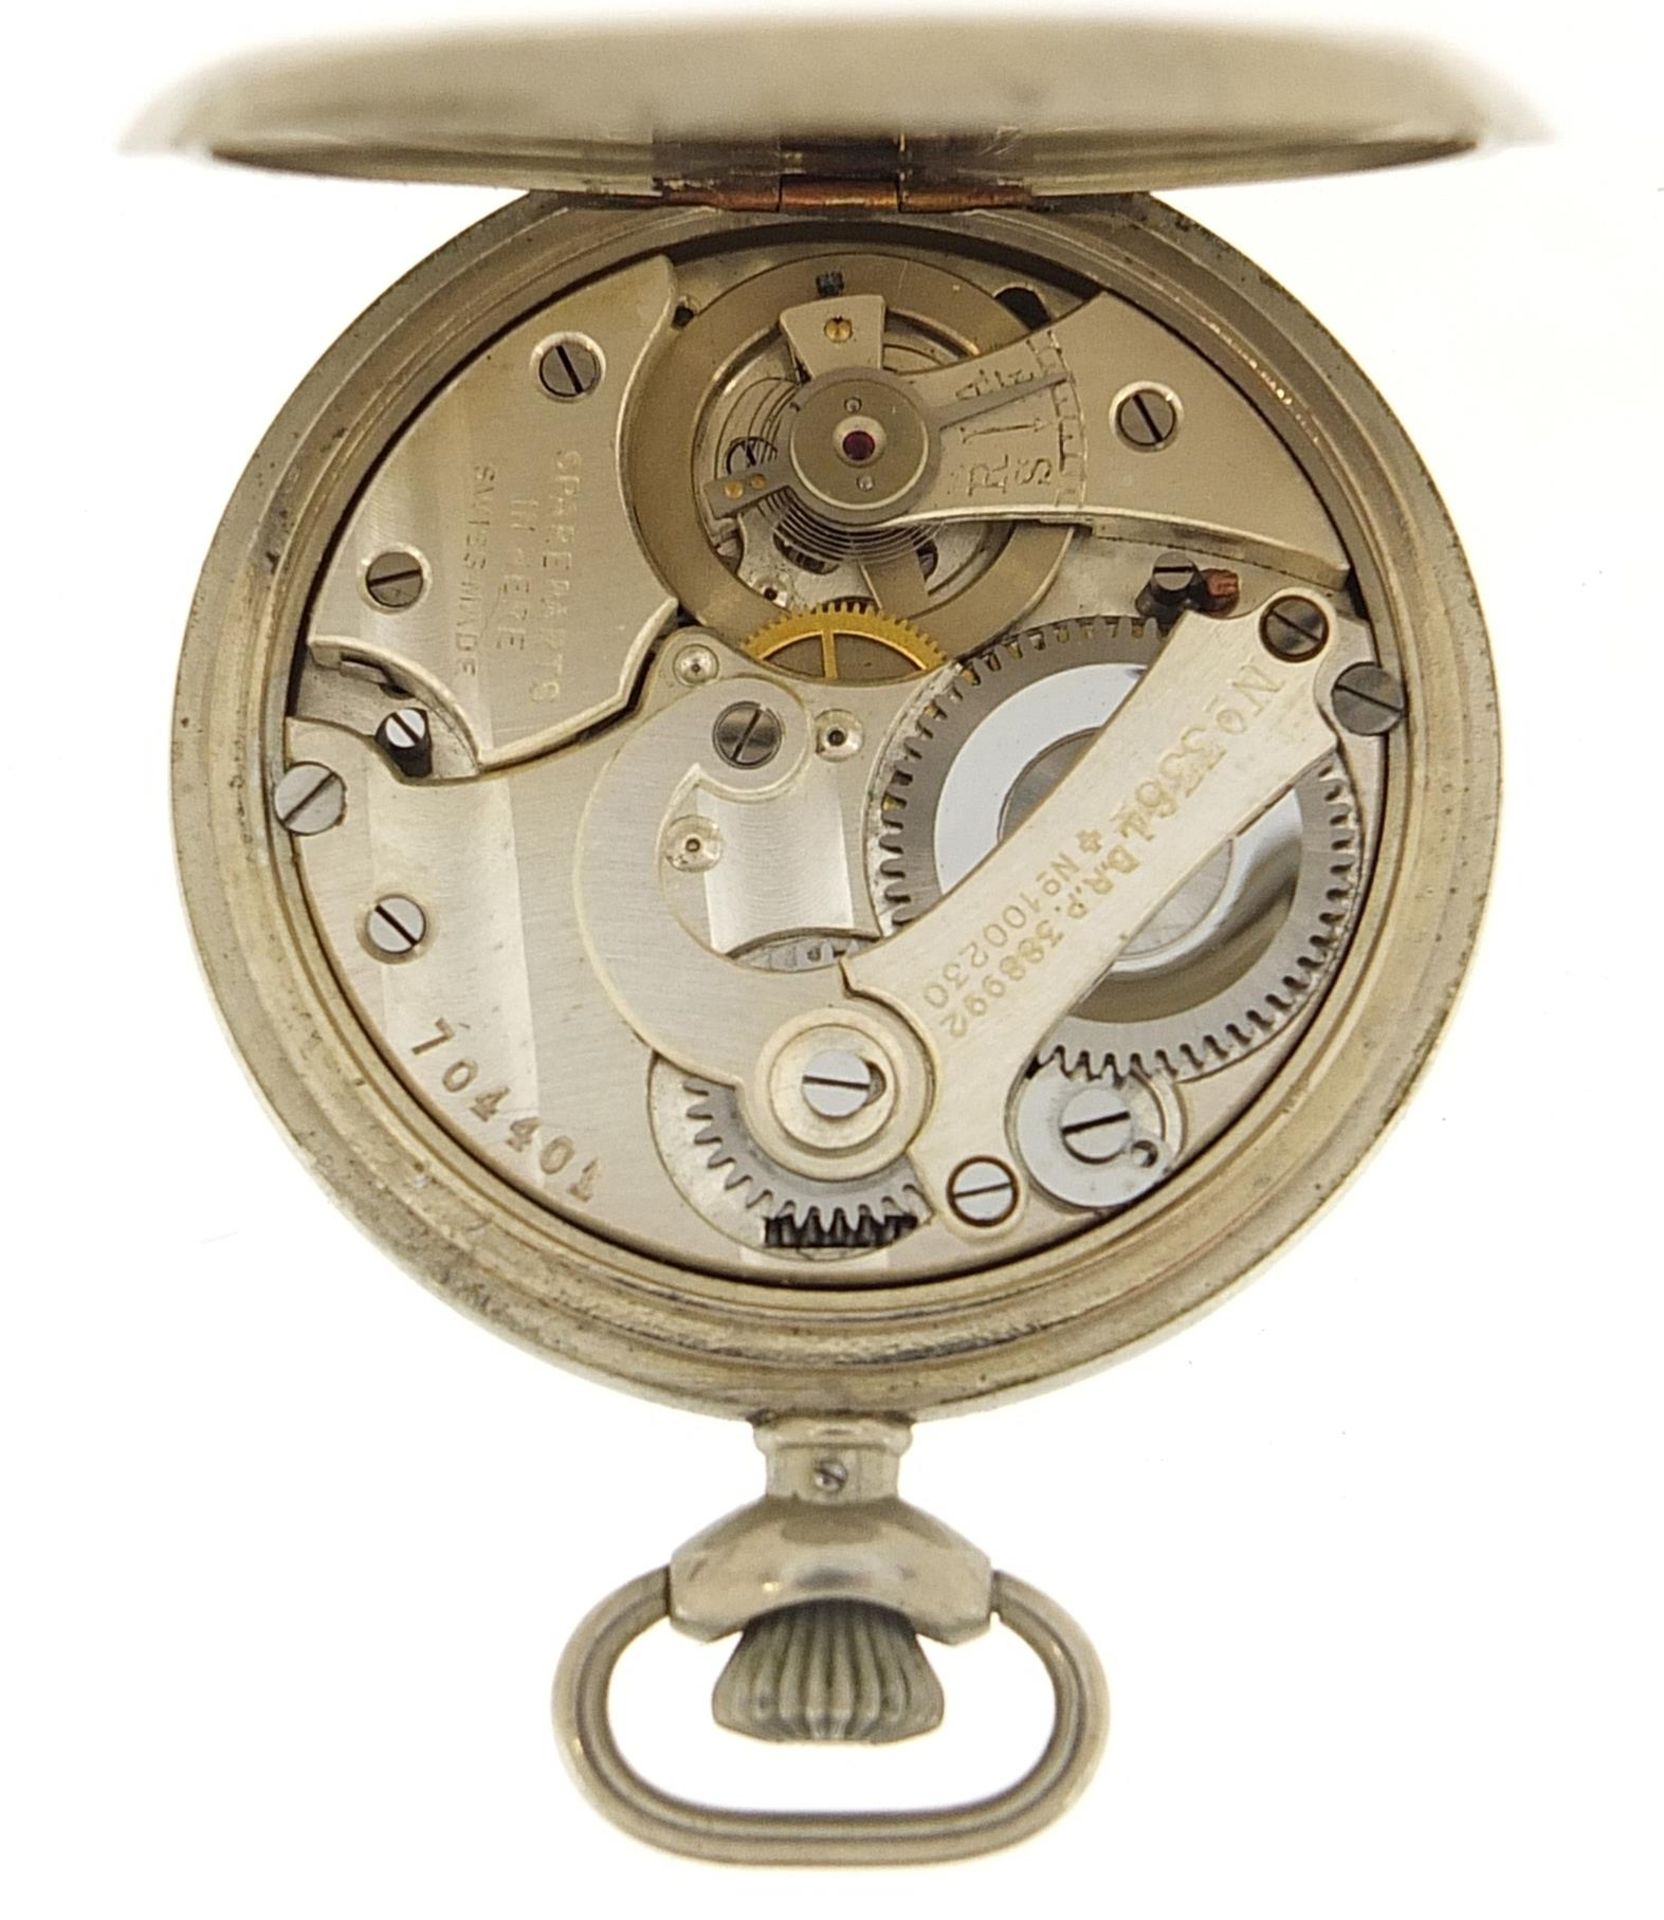 Vintage Gallet Swiss yachting timer, 47mm in diameter - Bild 3 aus 6